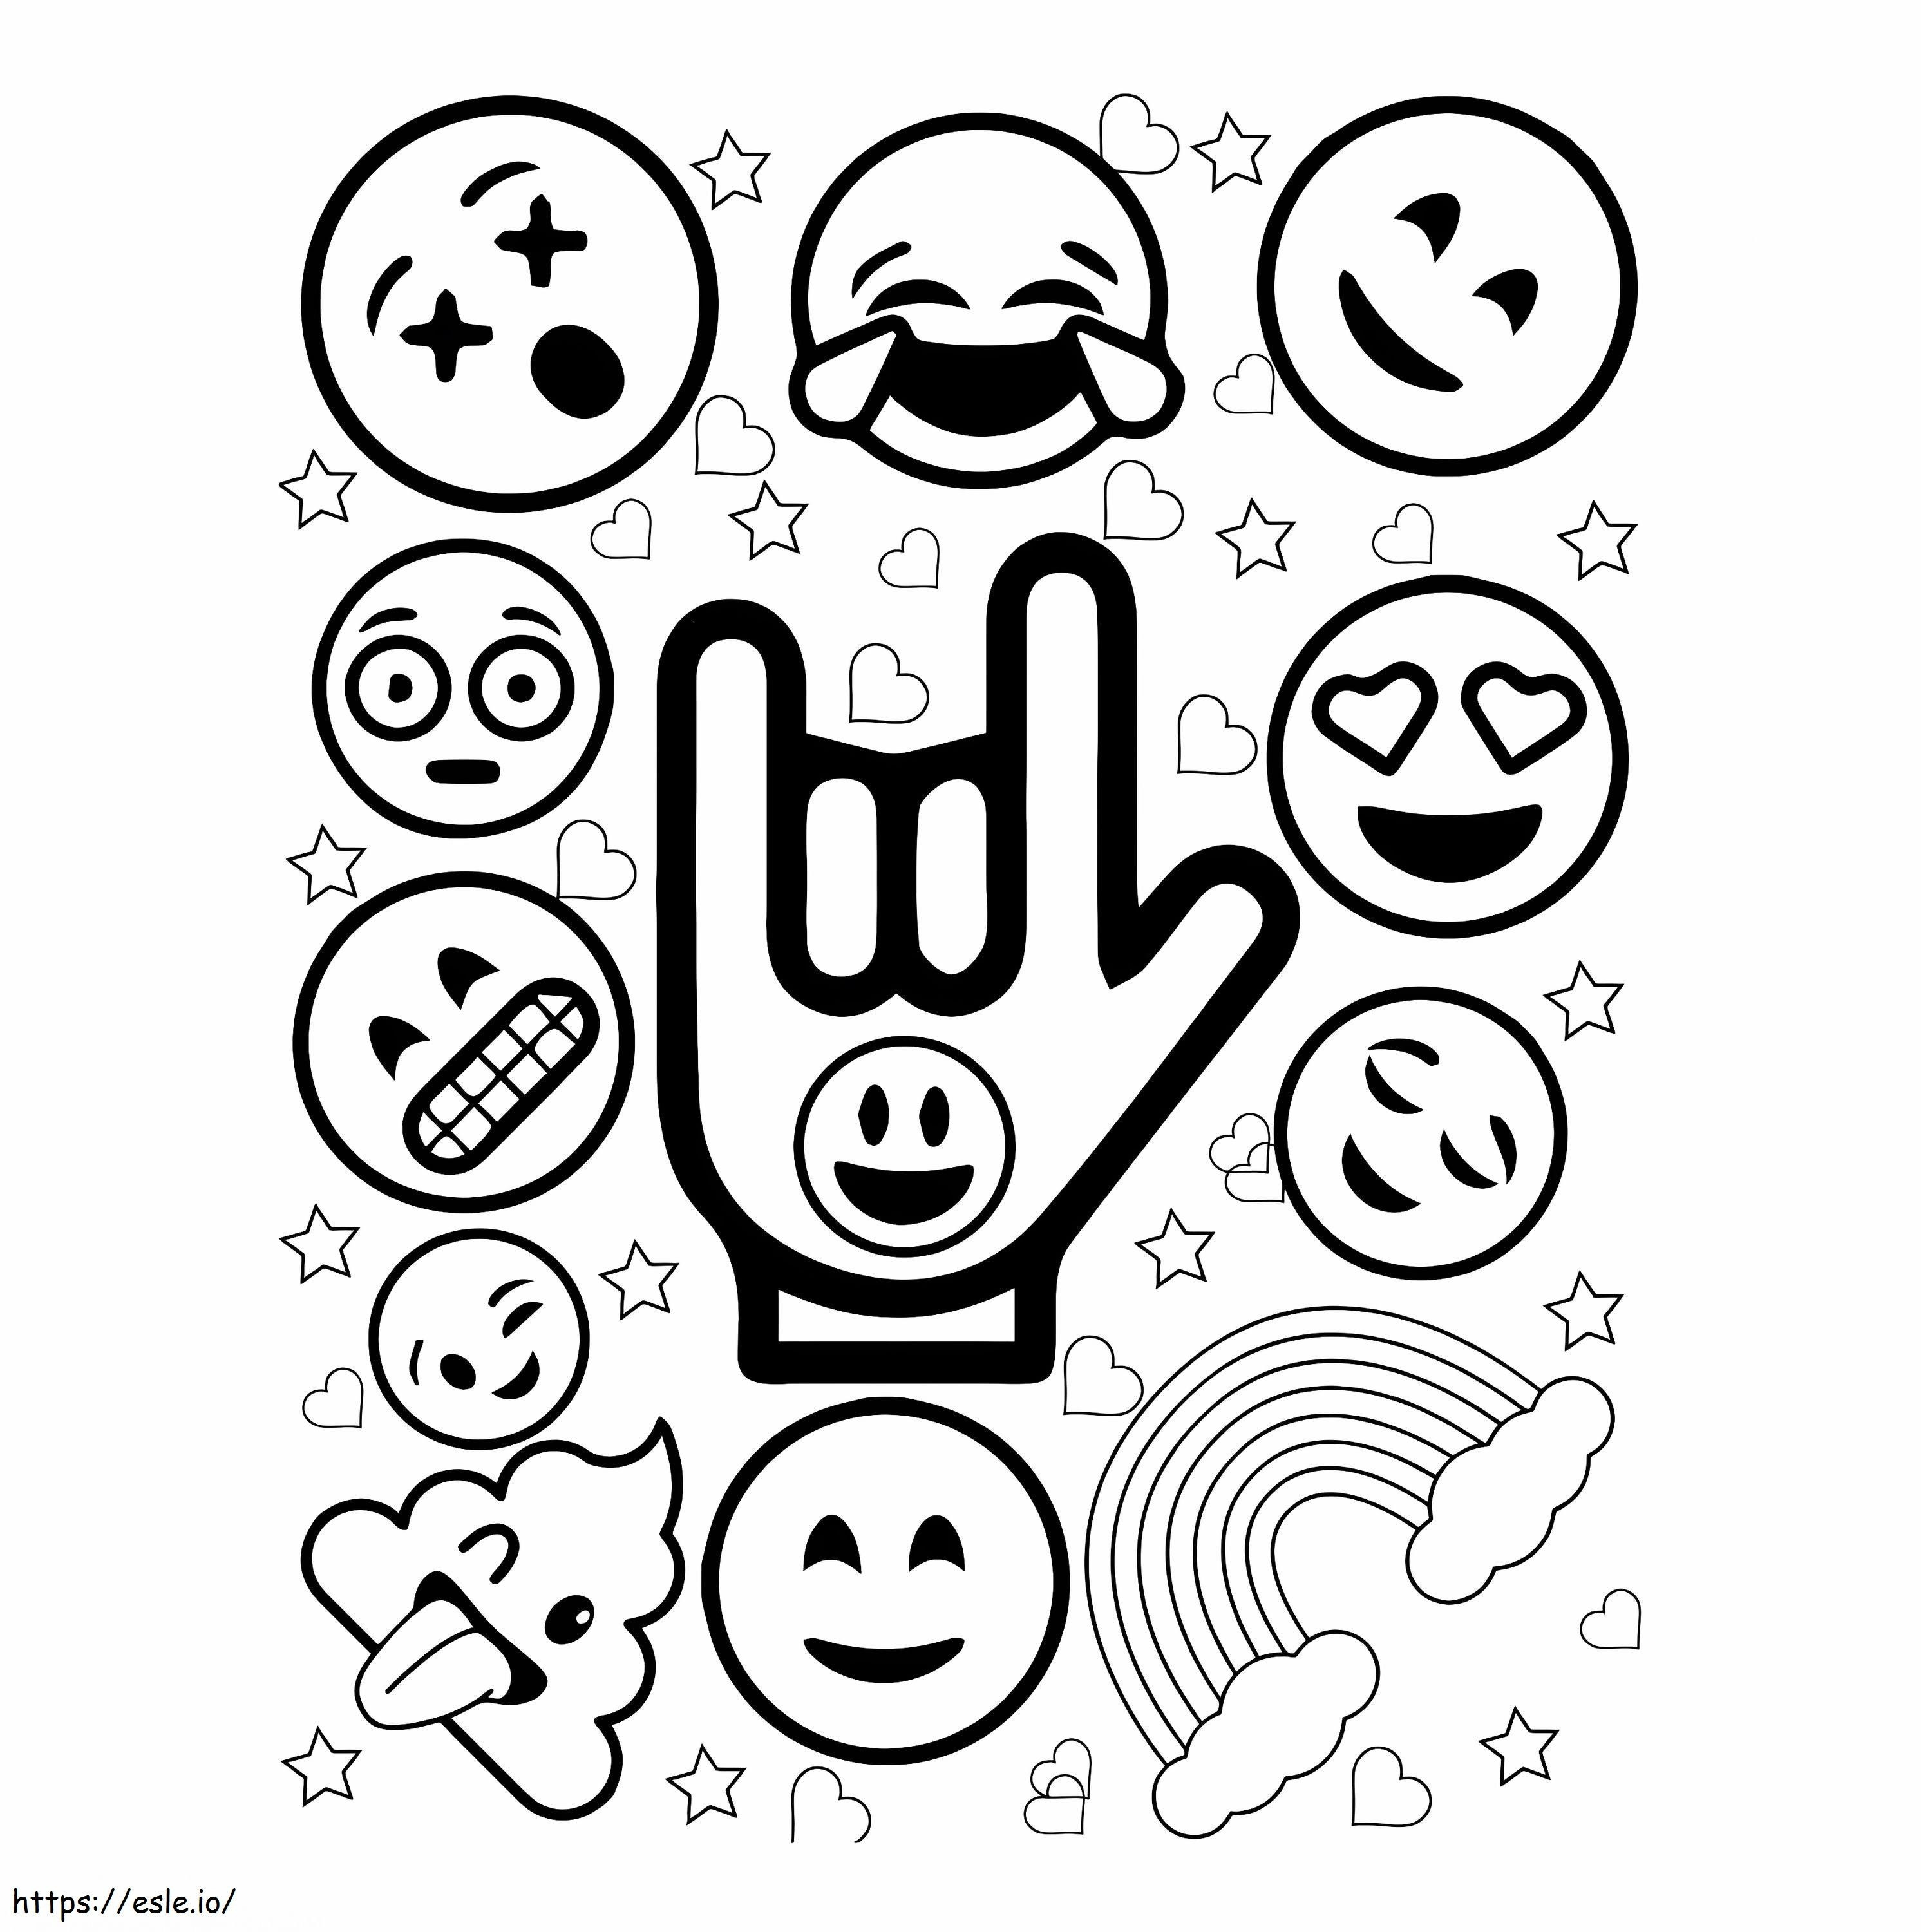 Schöne Emojis ausmalbilder